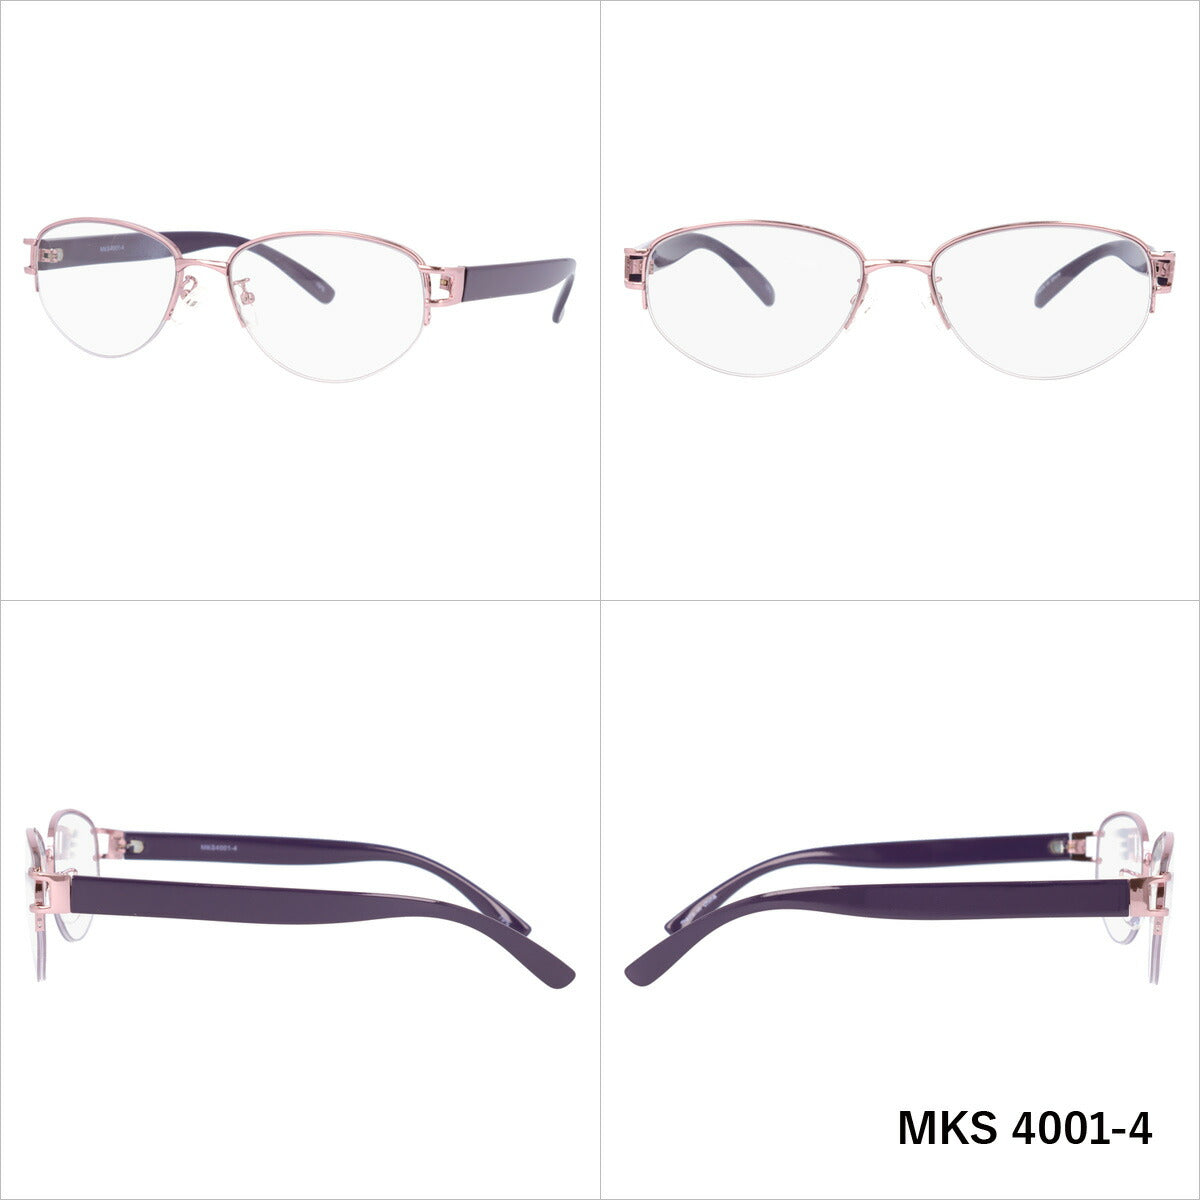 マシューキョウト サングラス mashu KYOTO MKS 4001 全6カラー 55サイズ オーバル型 ユニセックス メンズ レディース UVカット 紫外線 カラーサングラス ブランド 人気 定番 ラッピング無料